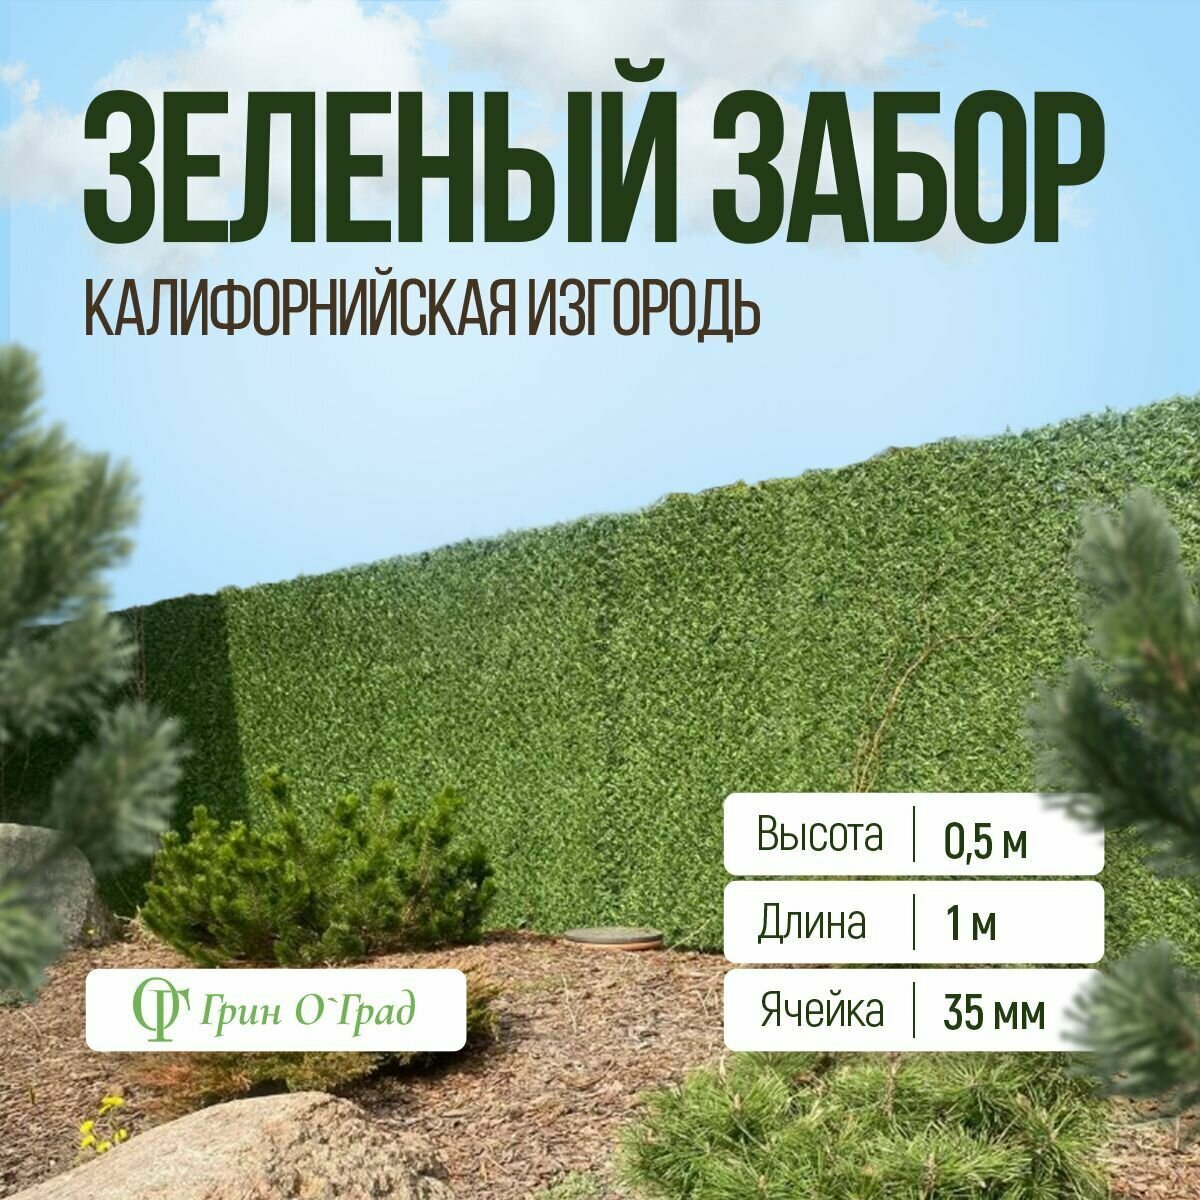 Сетка рабица Зелёный забор, калифорнийская изгородь высота 0,5м, длина 1м, ячейка 35мм - фотография № 1